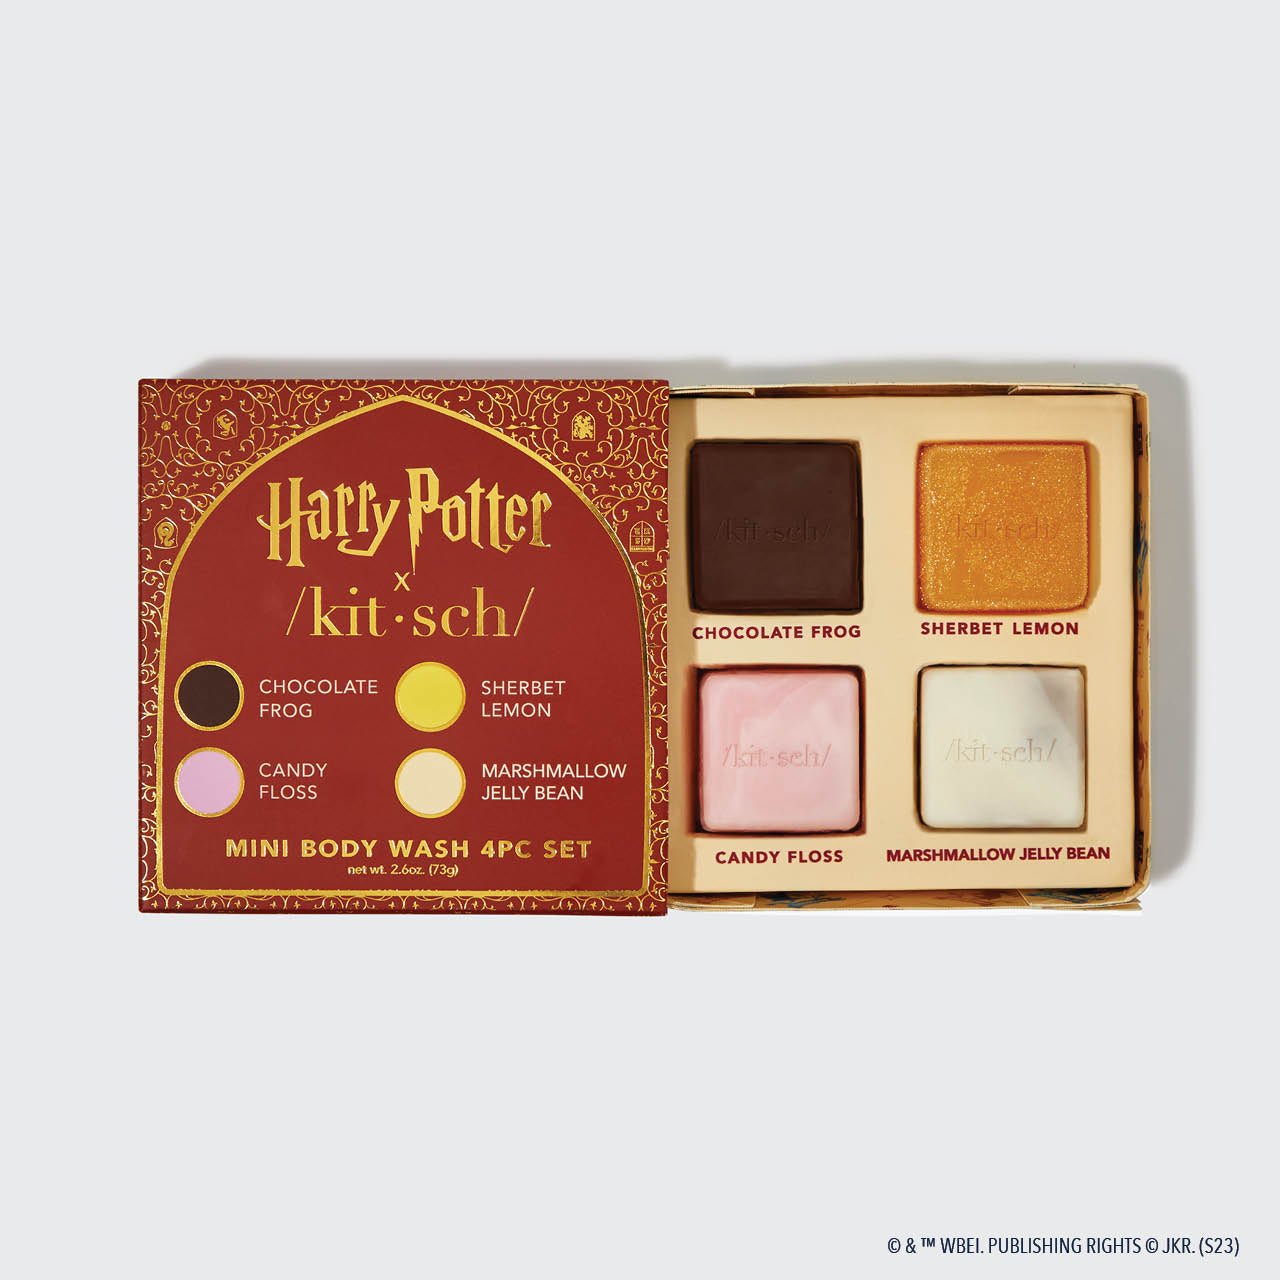 Harry Potter x Kitsch testápoló 4db mintavevő szett